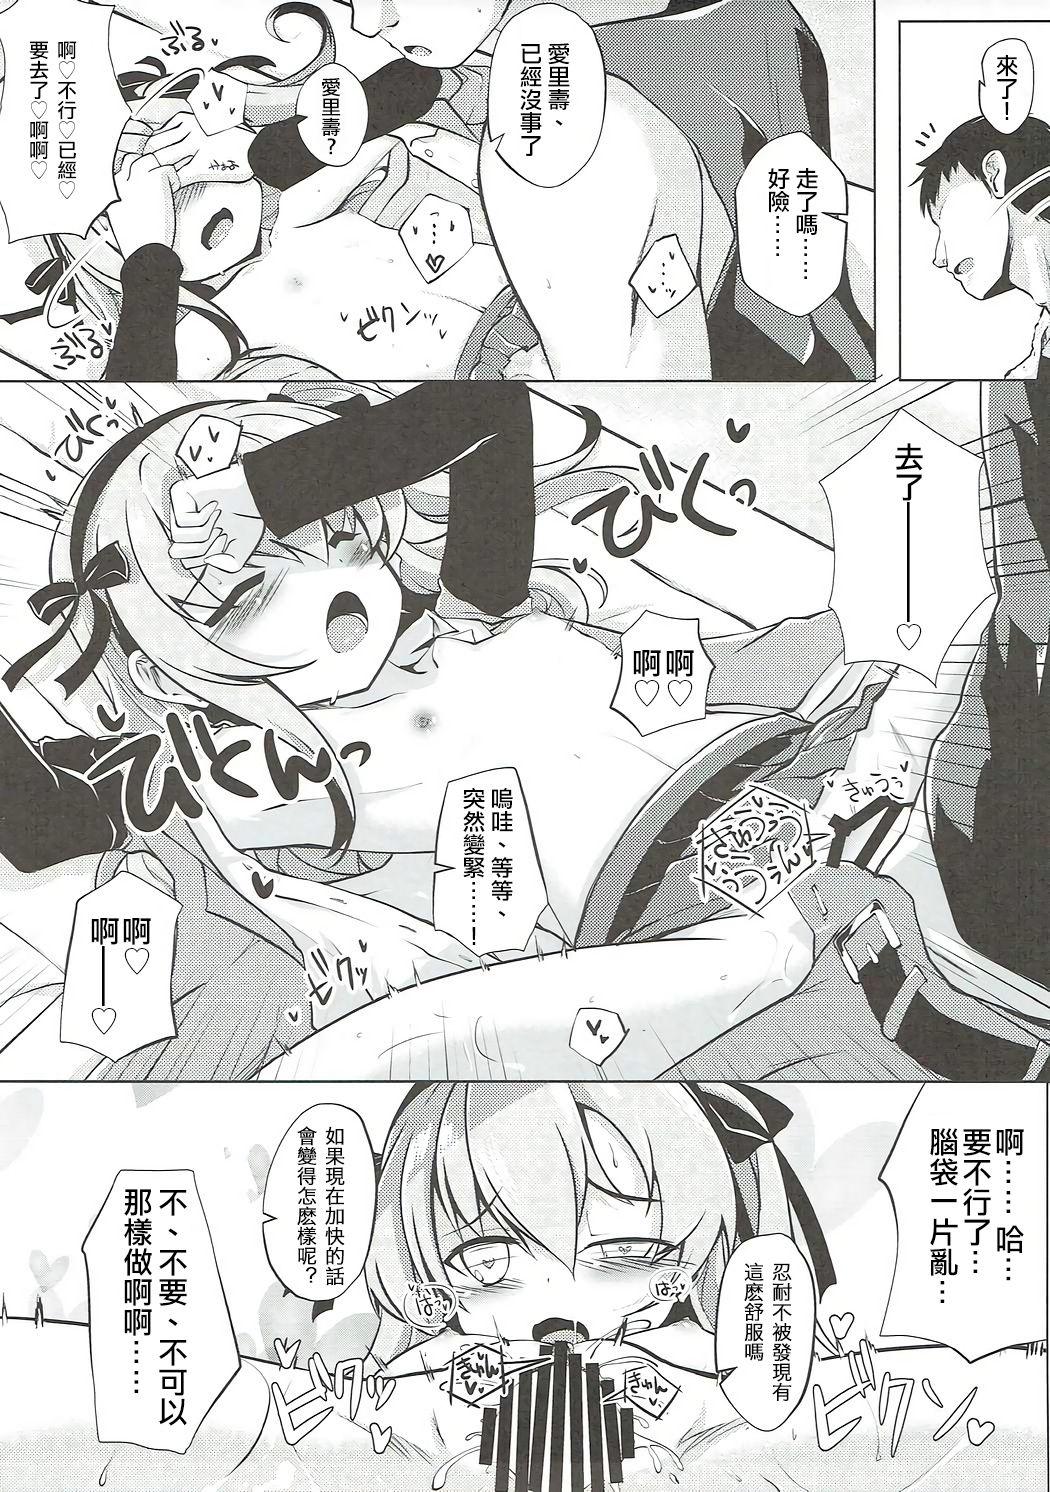  Arisu-chan to Himitsu no Kouishitsu - Girls und panzer Juicy - Page 11